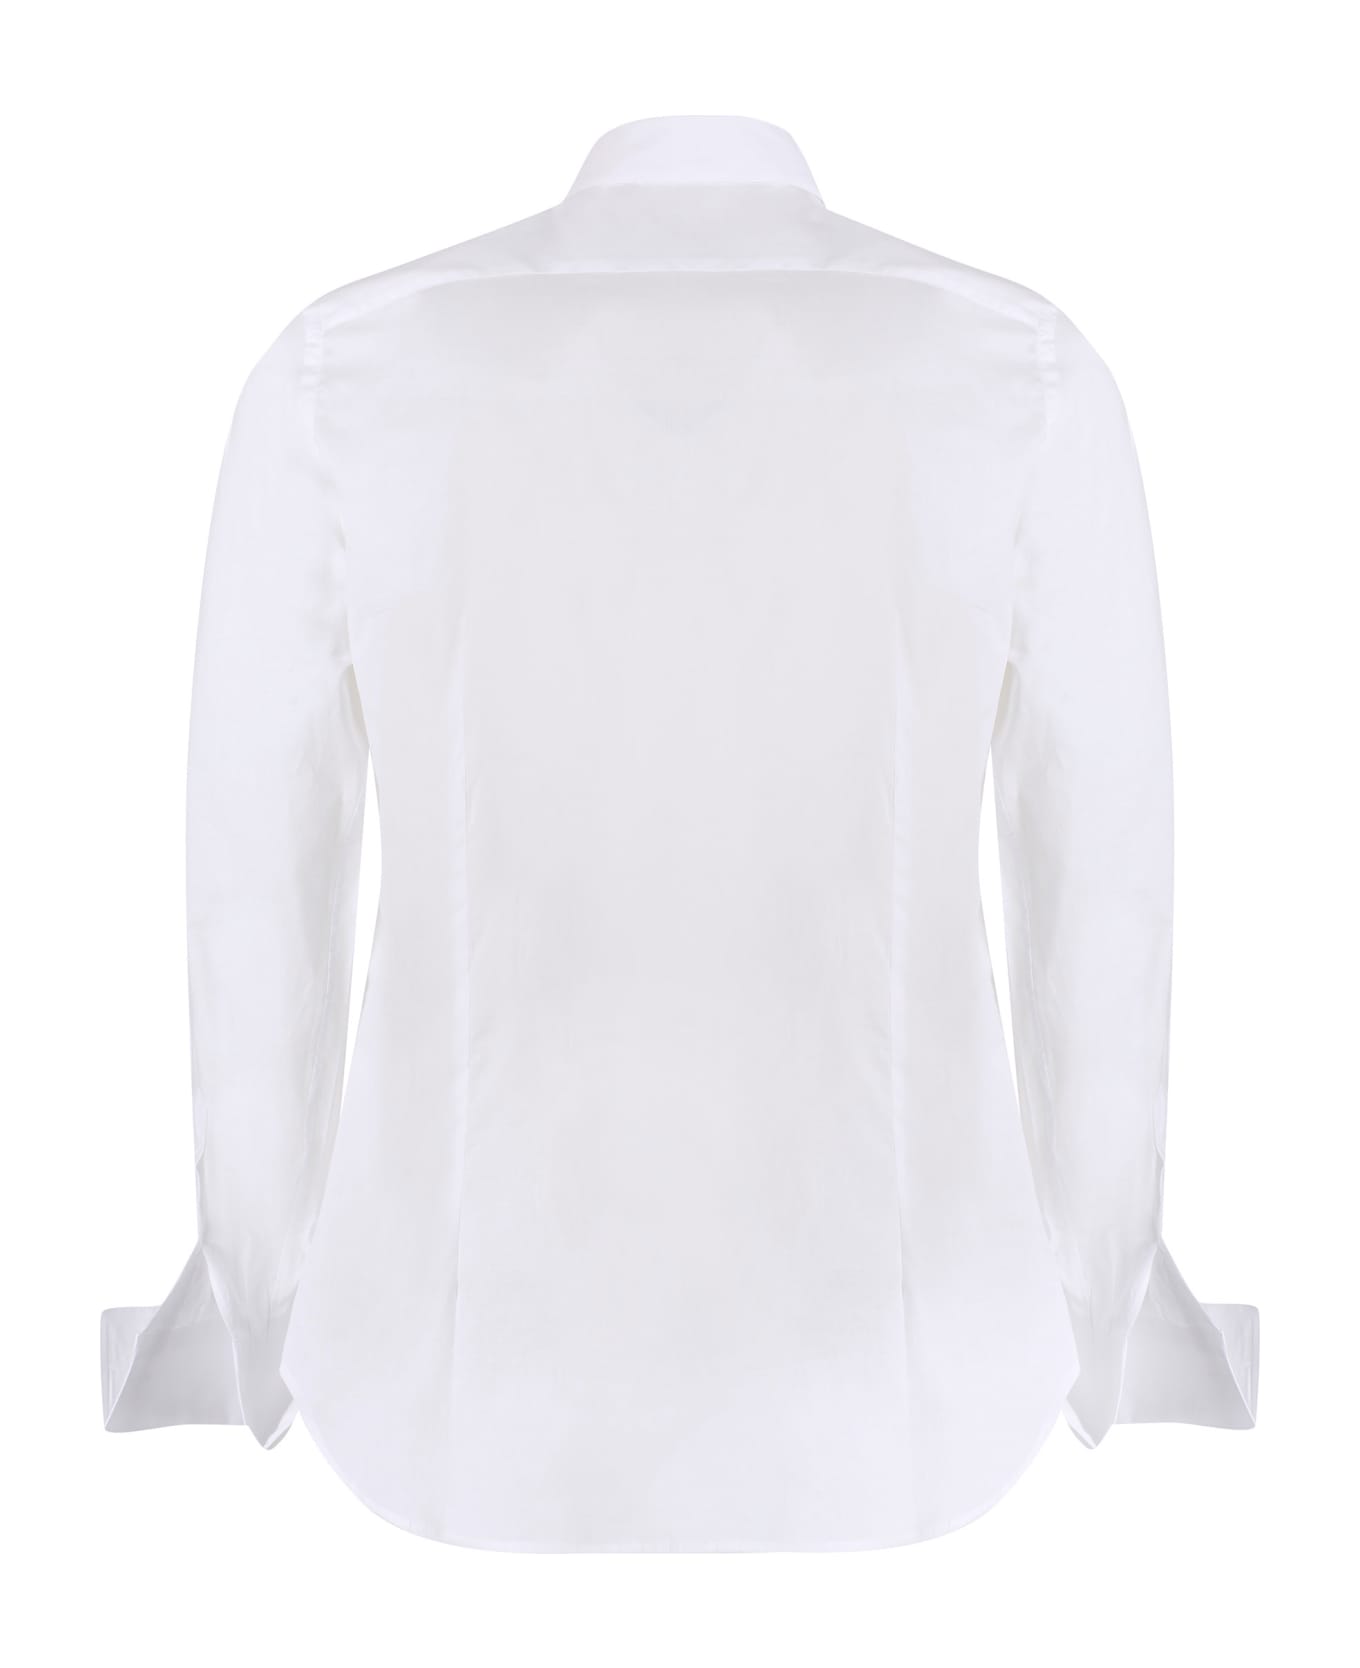 Canali Cotton Shirt - White シャツ